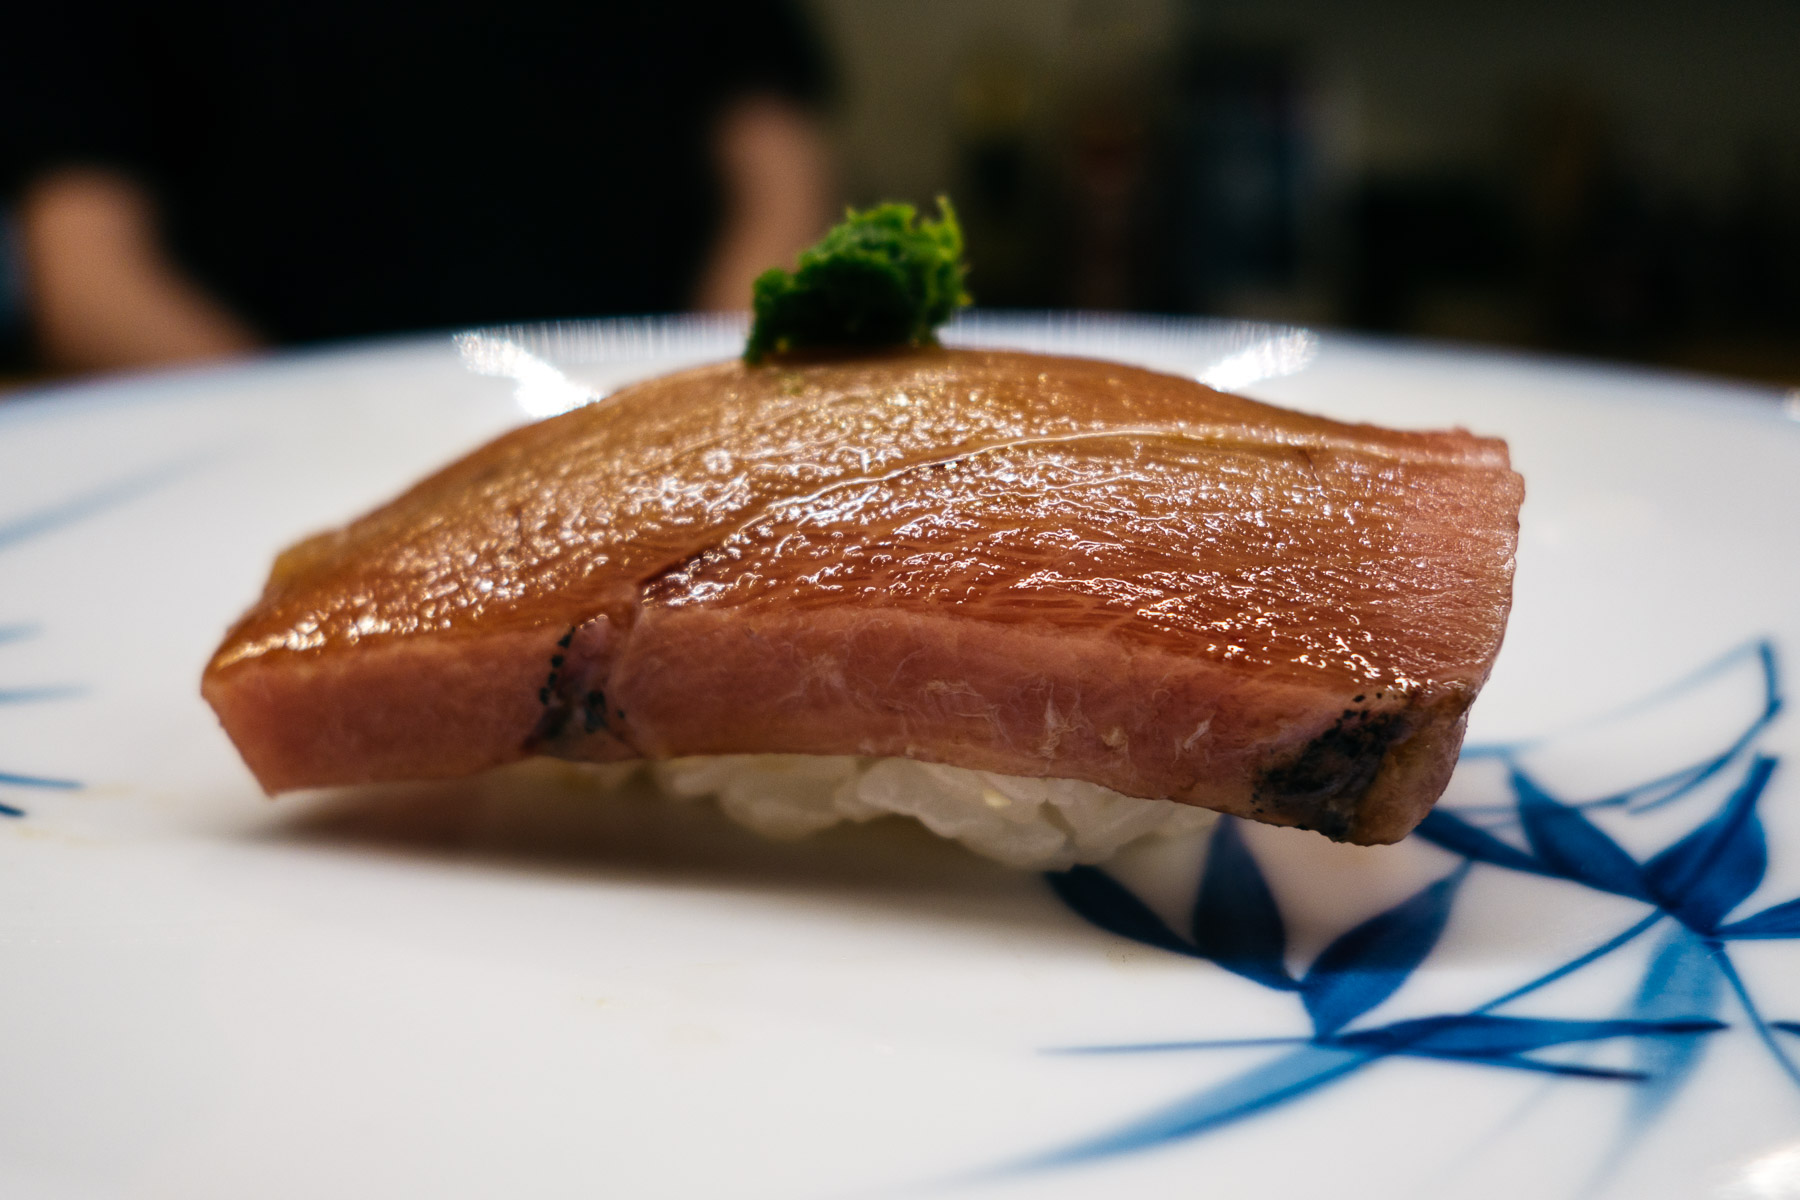 Chuu-toro z pastą z cebulki dymki (średniotłusta część tuńczyka błękitnopłetwego)